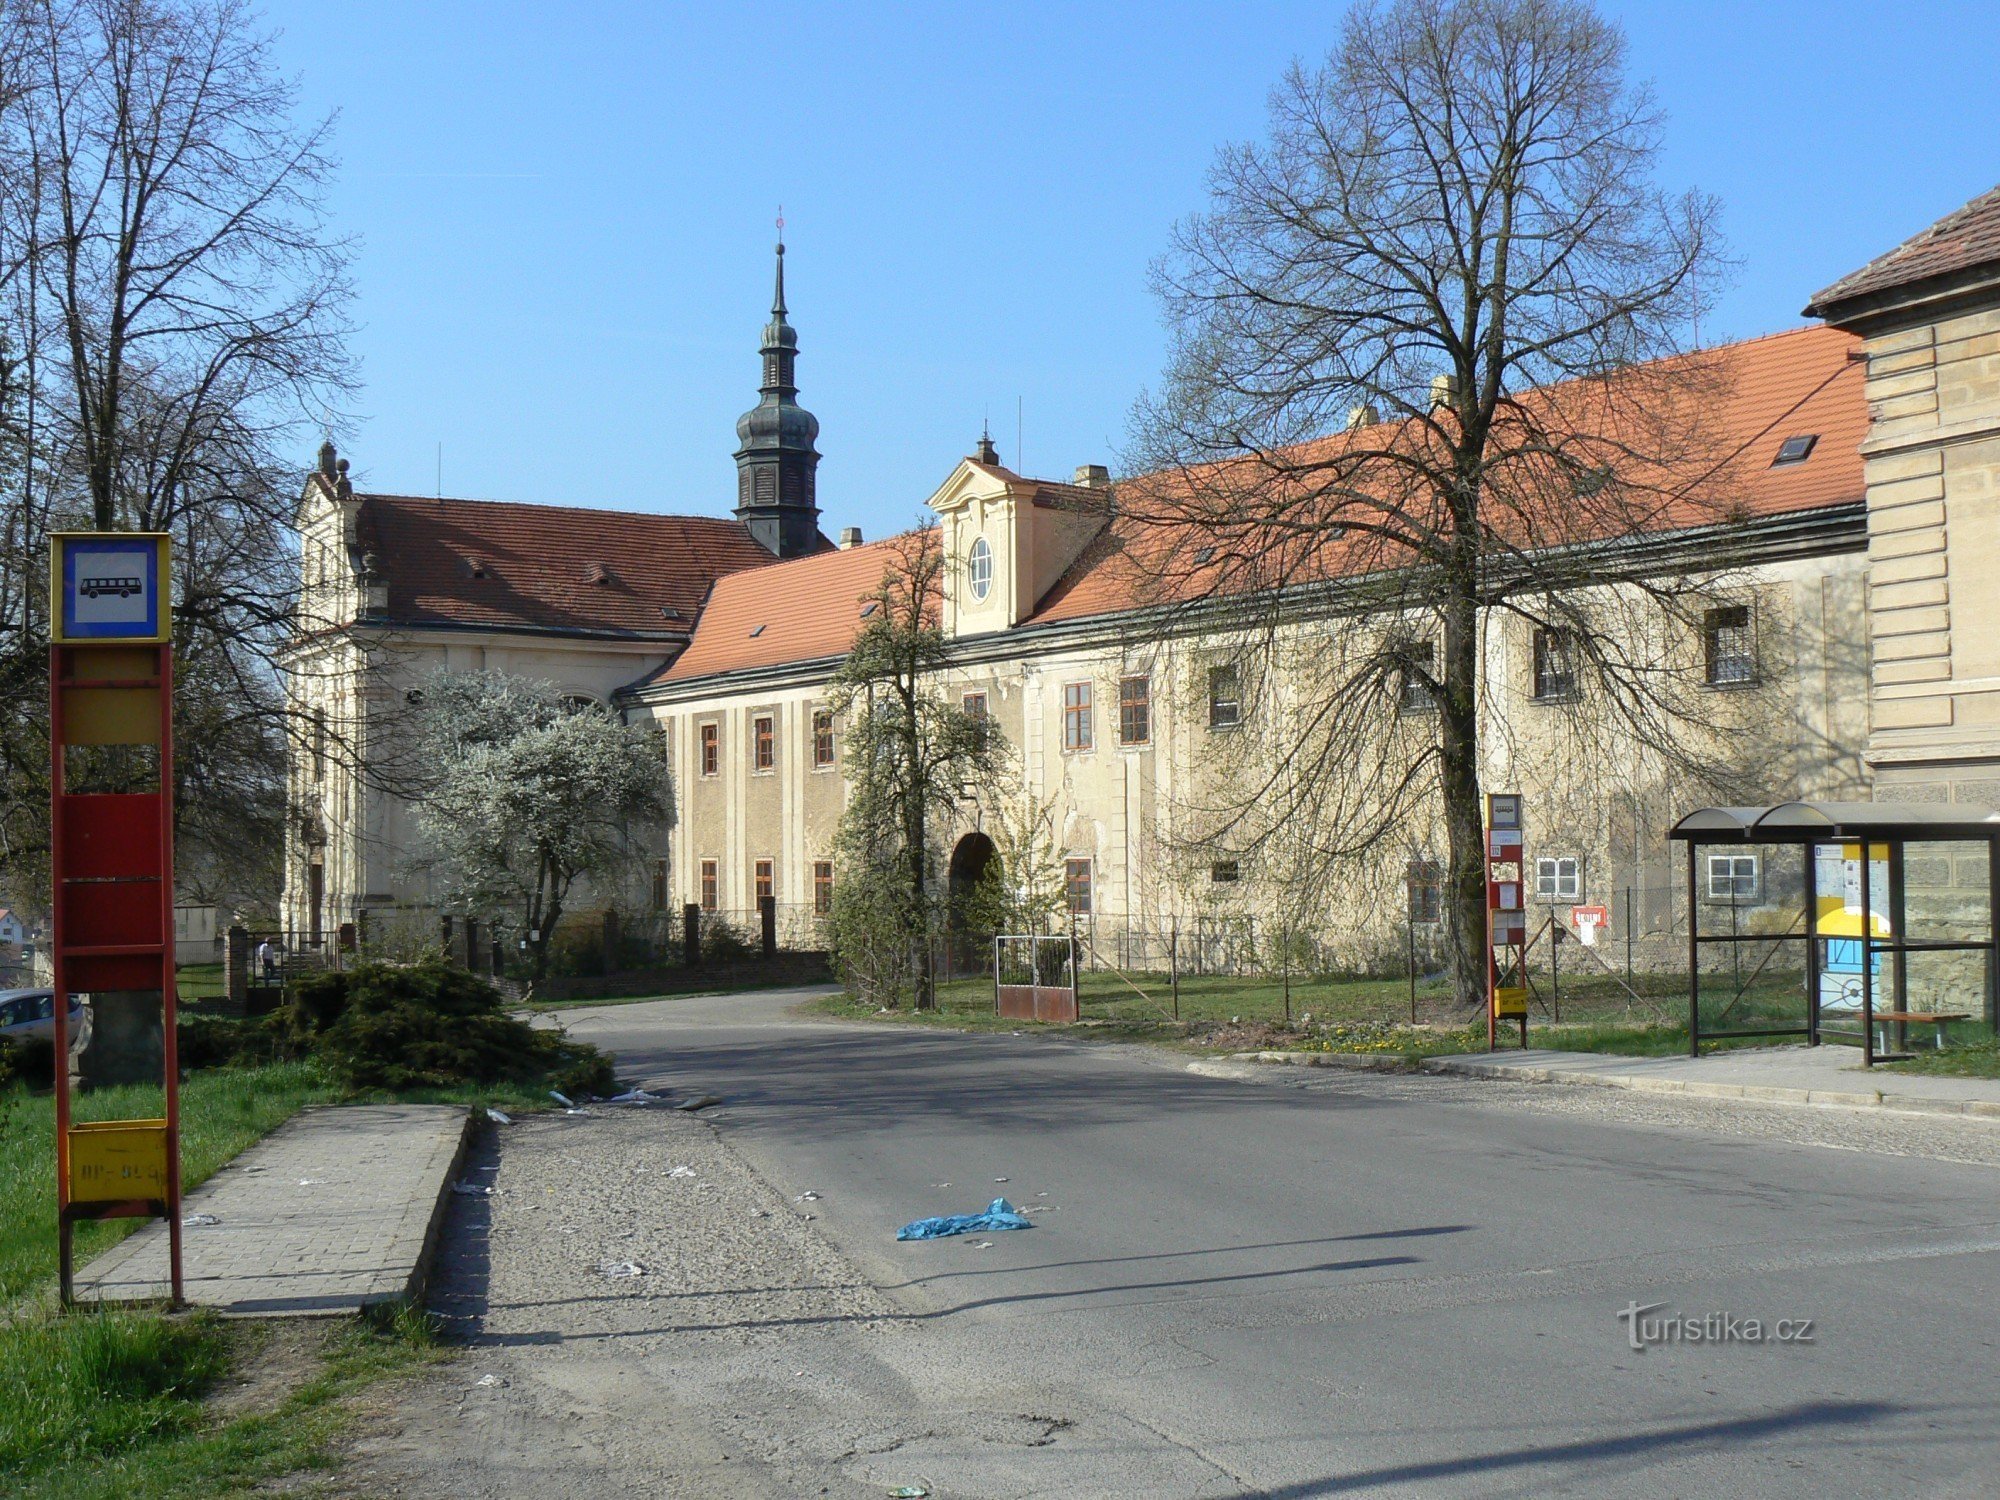 Grad in cerkev Tuchoměřice